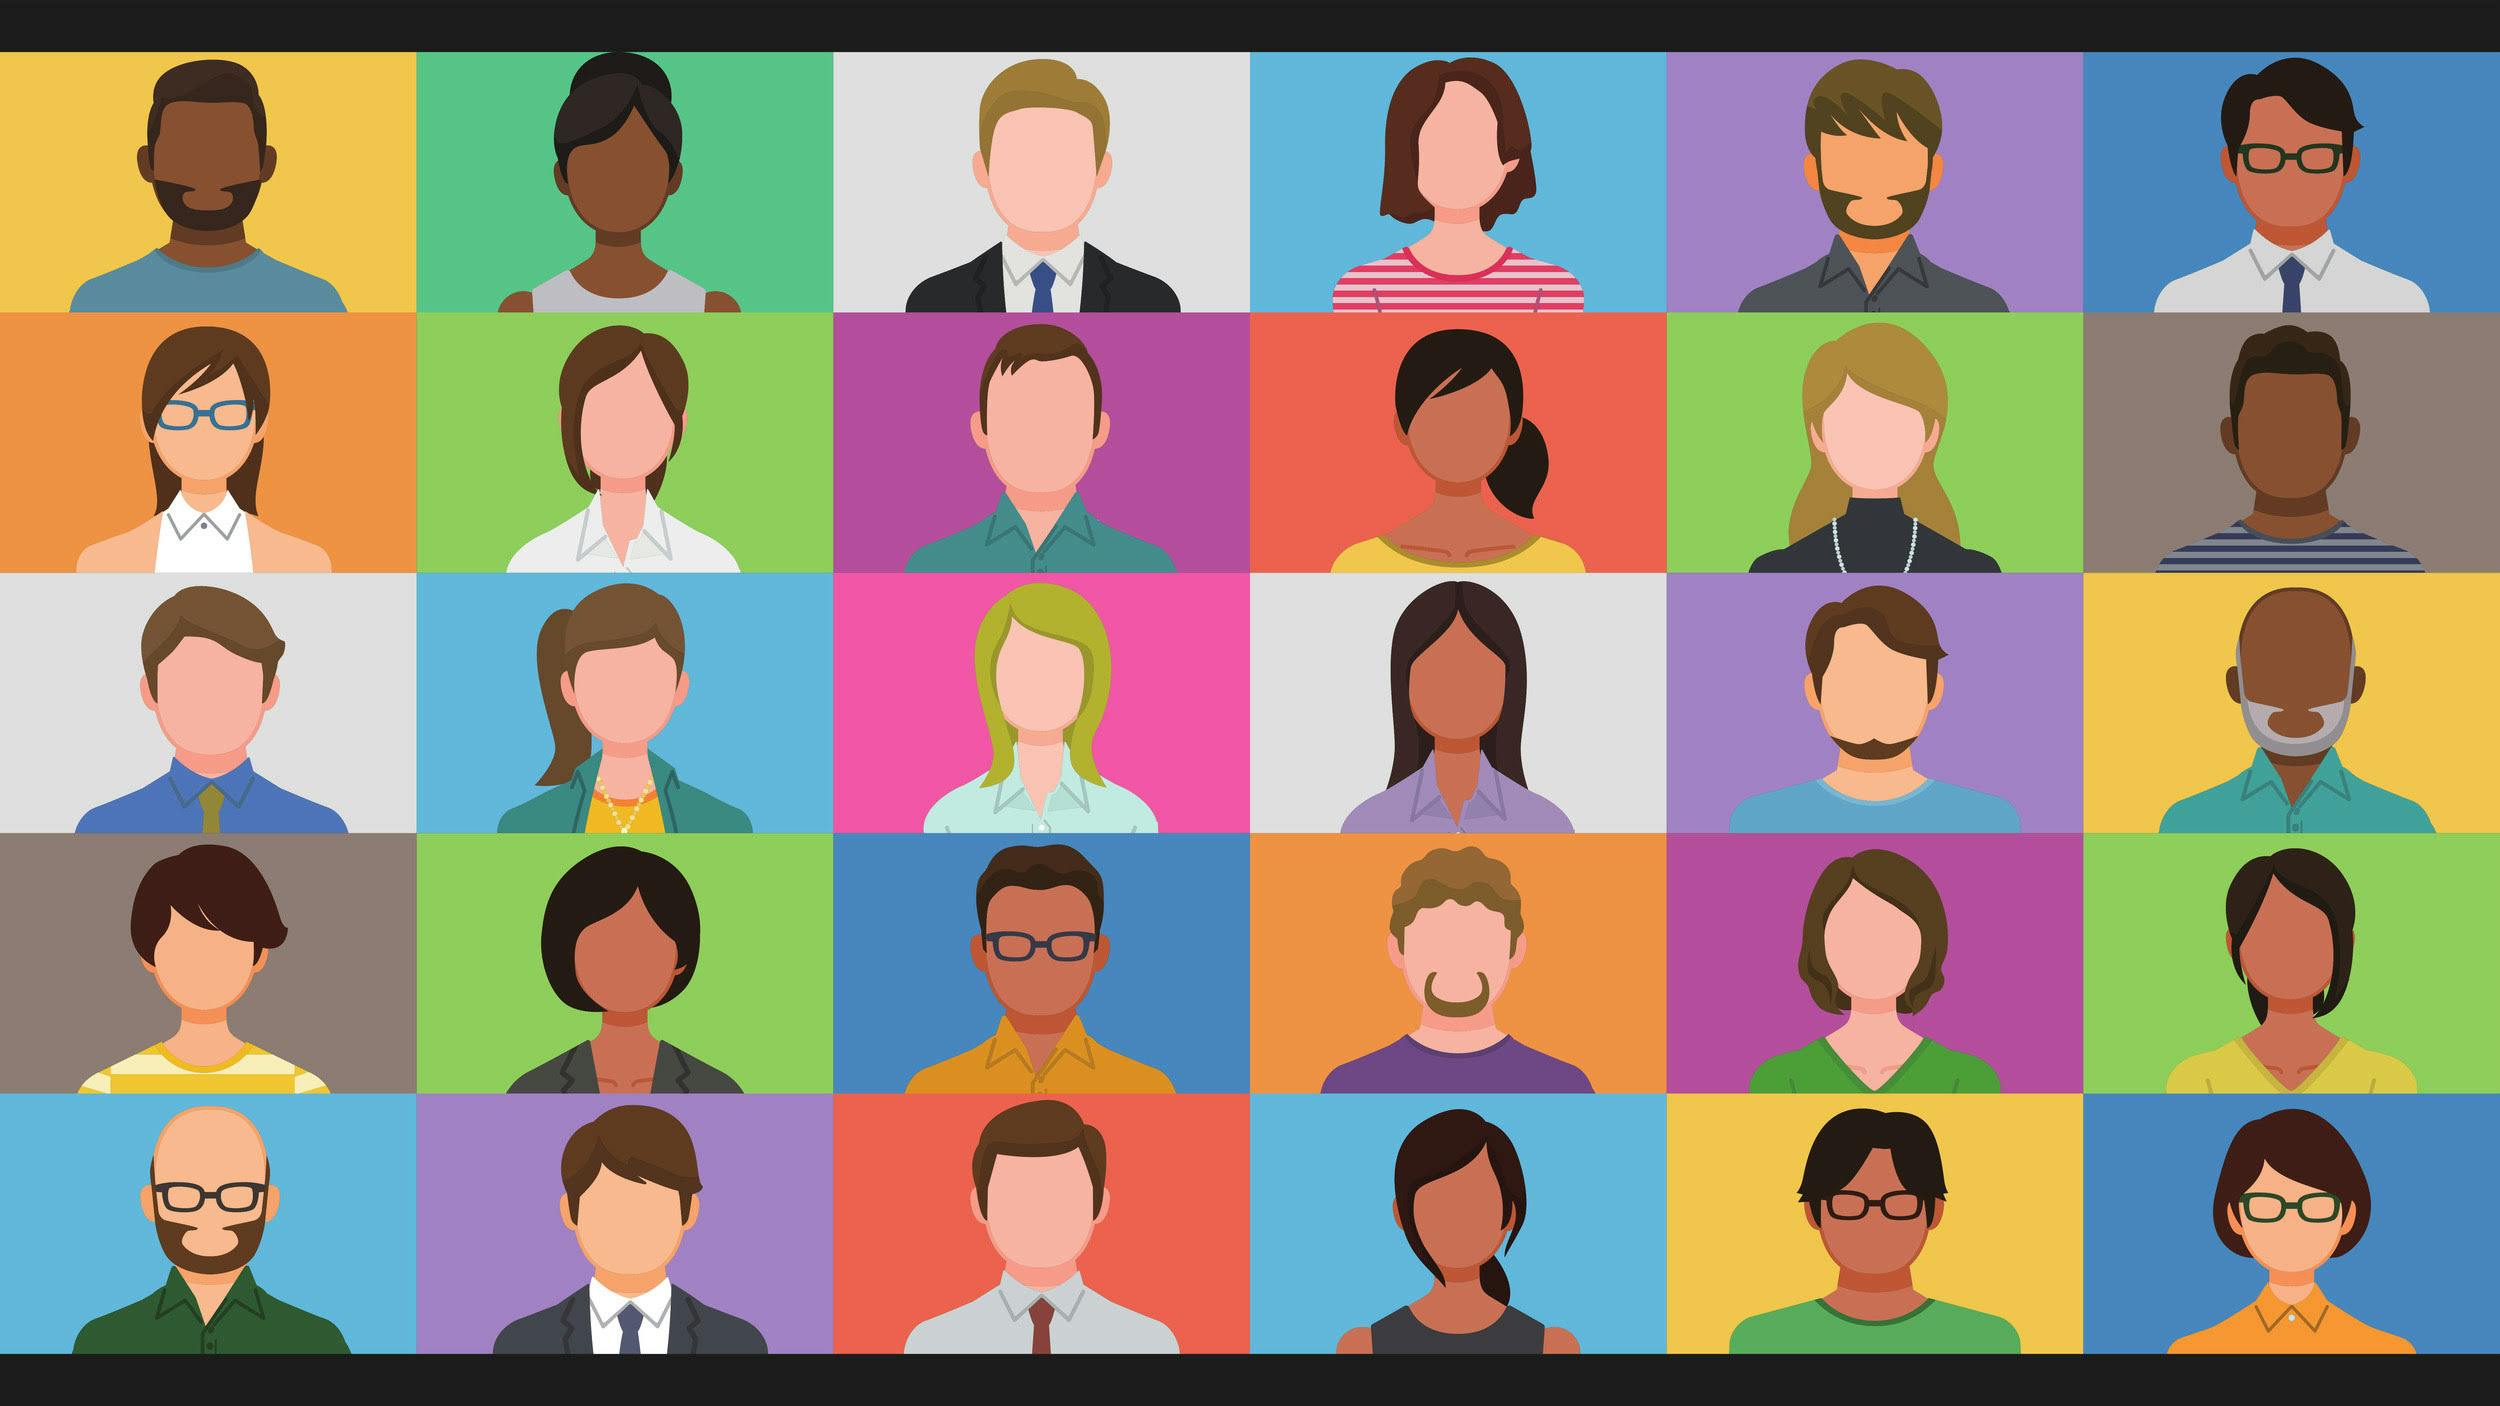 Farbenfrohe Anordnung aus 30 Kacheln, die Menschen im Porträt zeigen - dargestellt in Comic-Grafik.